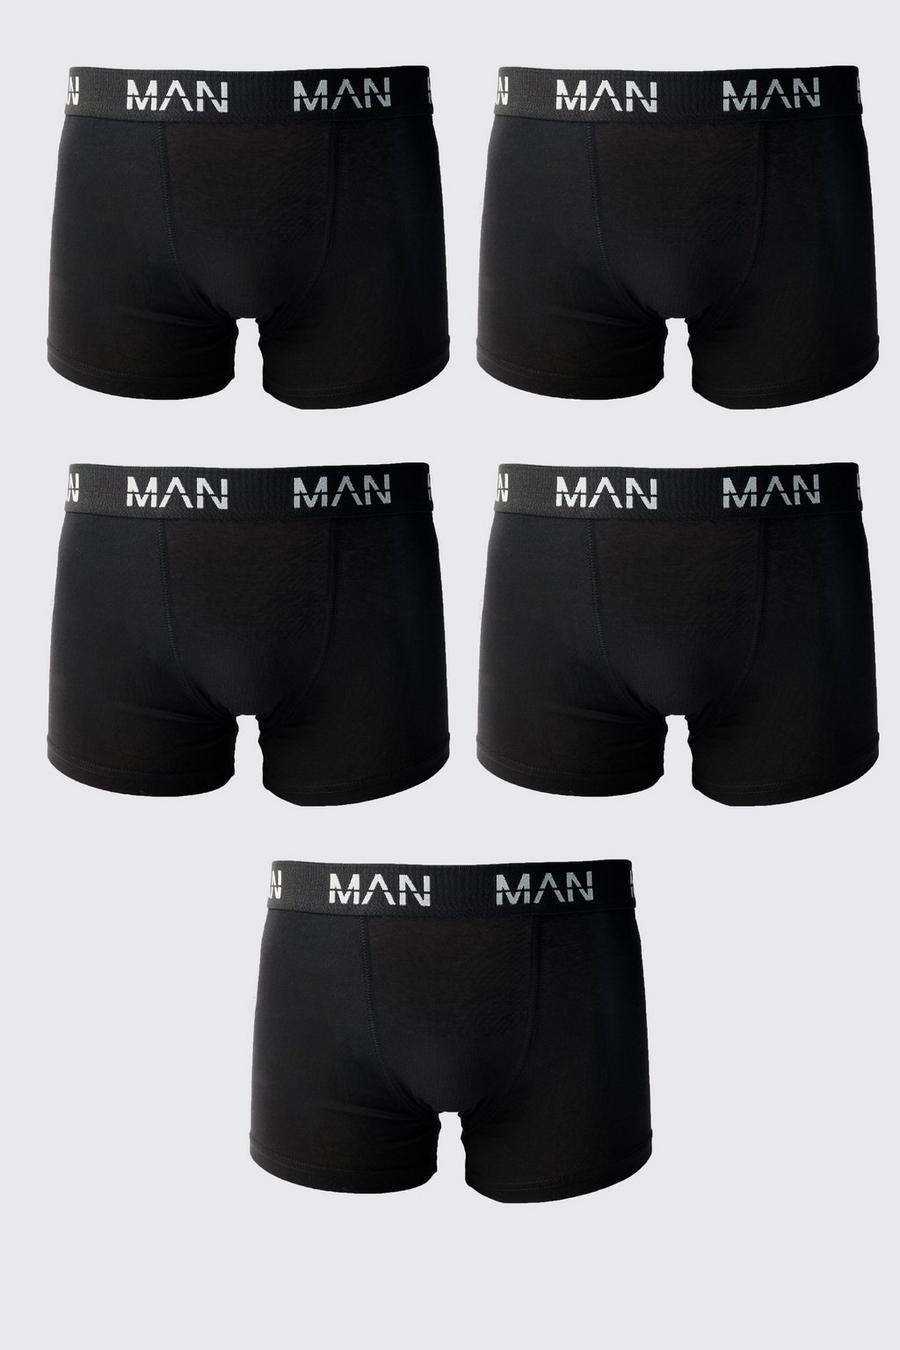 Coquette Underwear for Men for sale